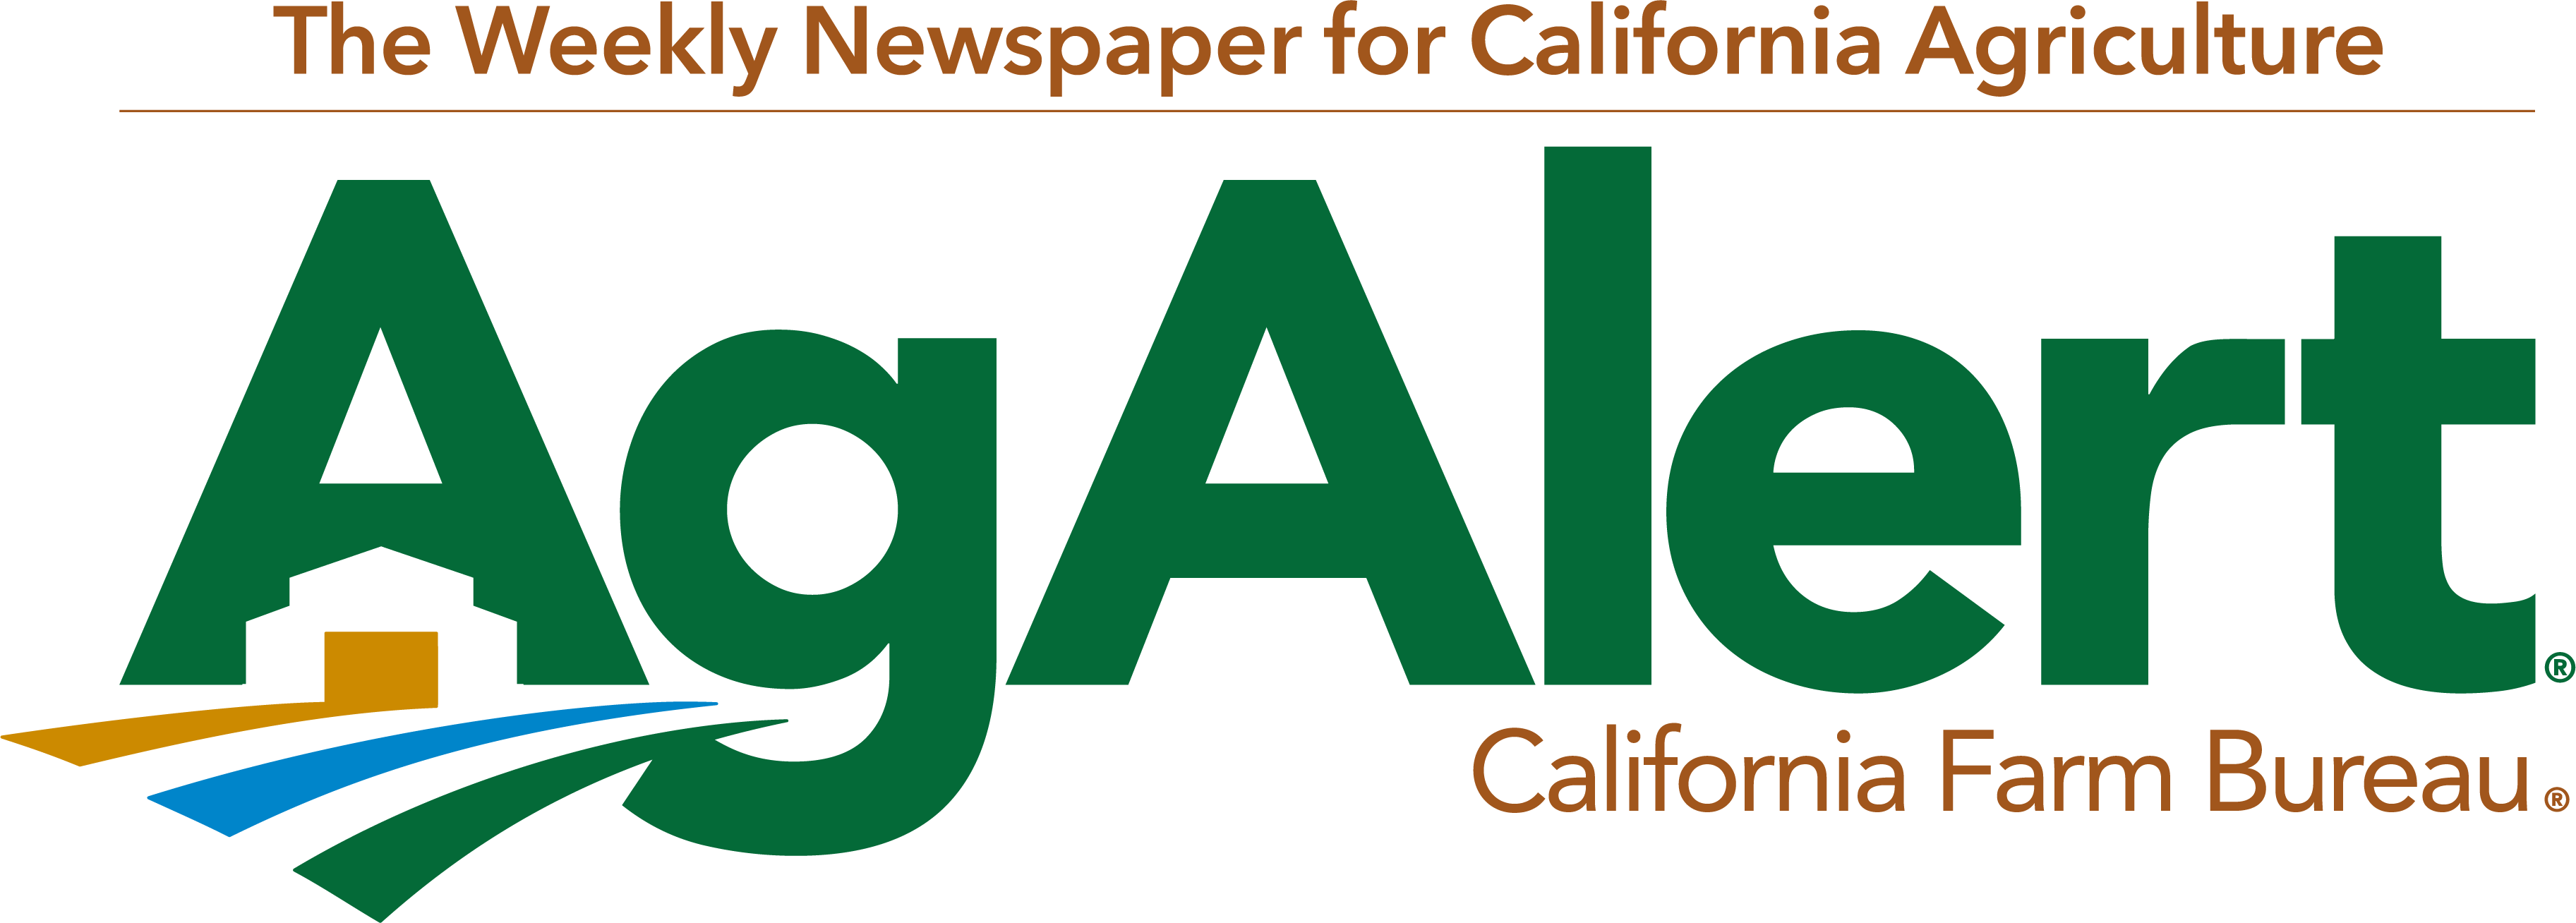 Ag Alert Logo